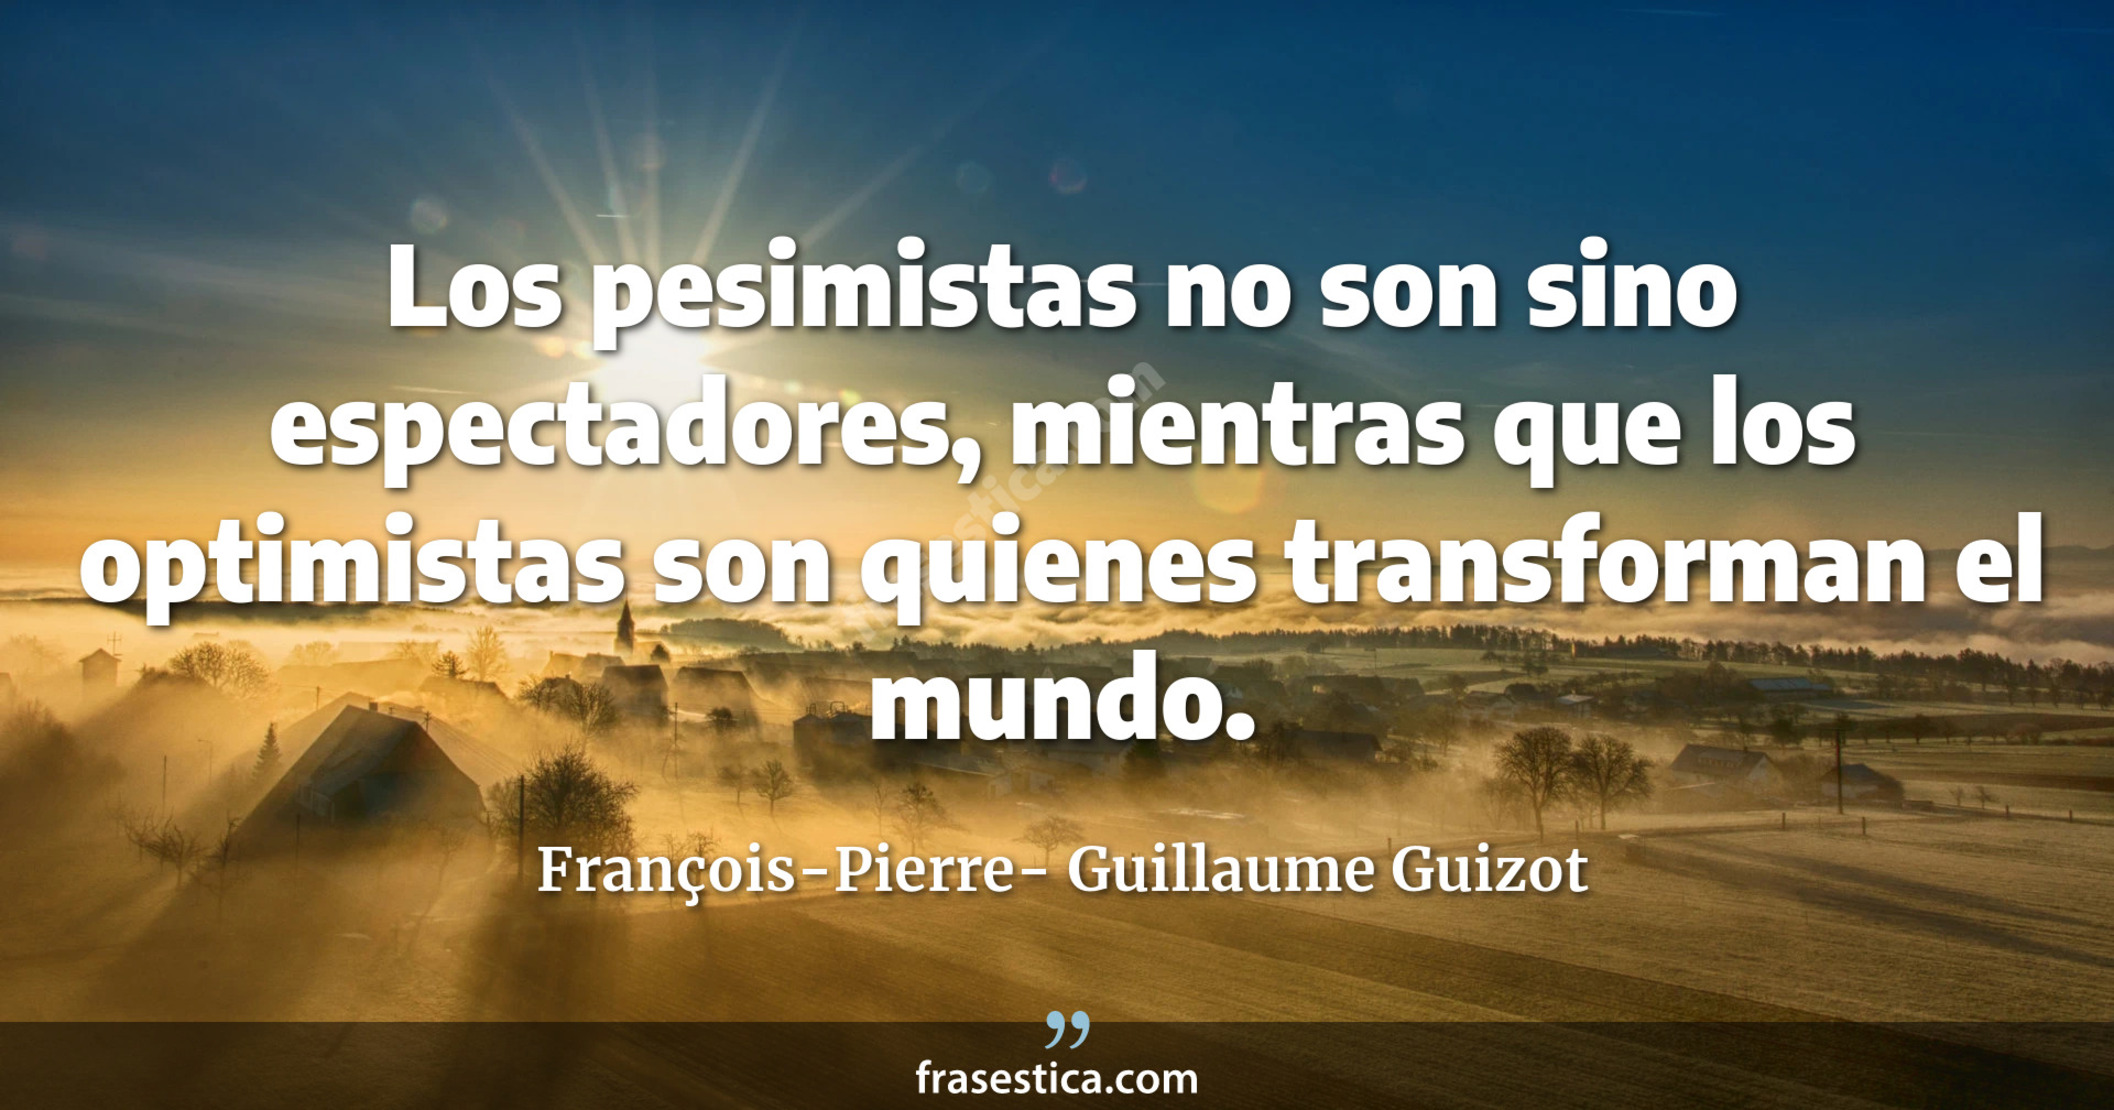 Los pesimistas no son sino espectadores, mientras que los optimistas son quienes transforman el mundo.  - François-Pierre- Guillaume Guizot